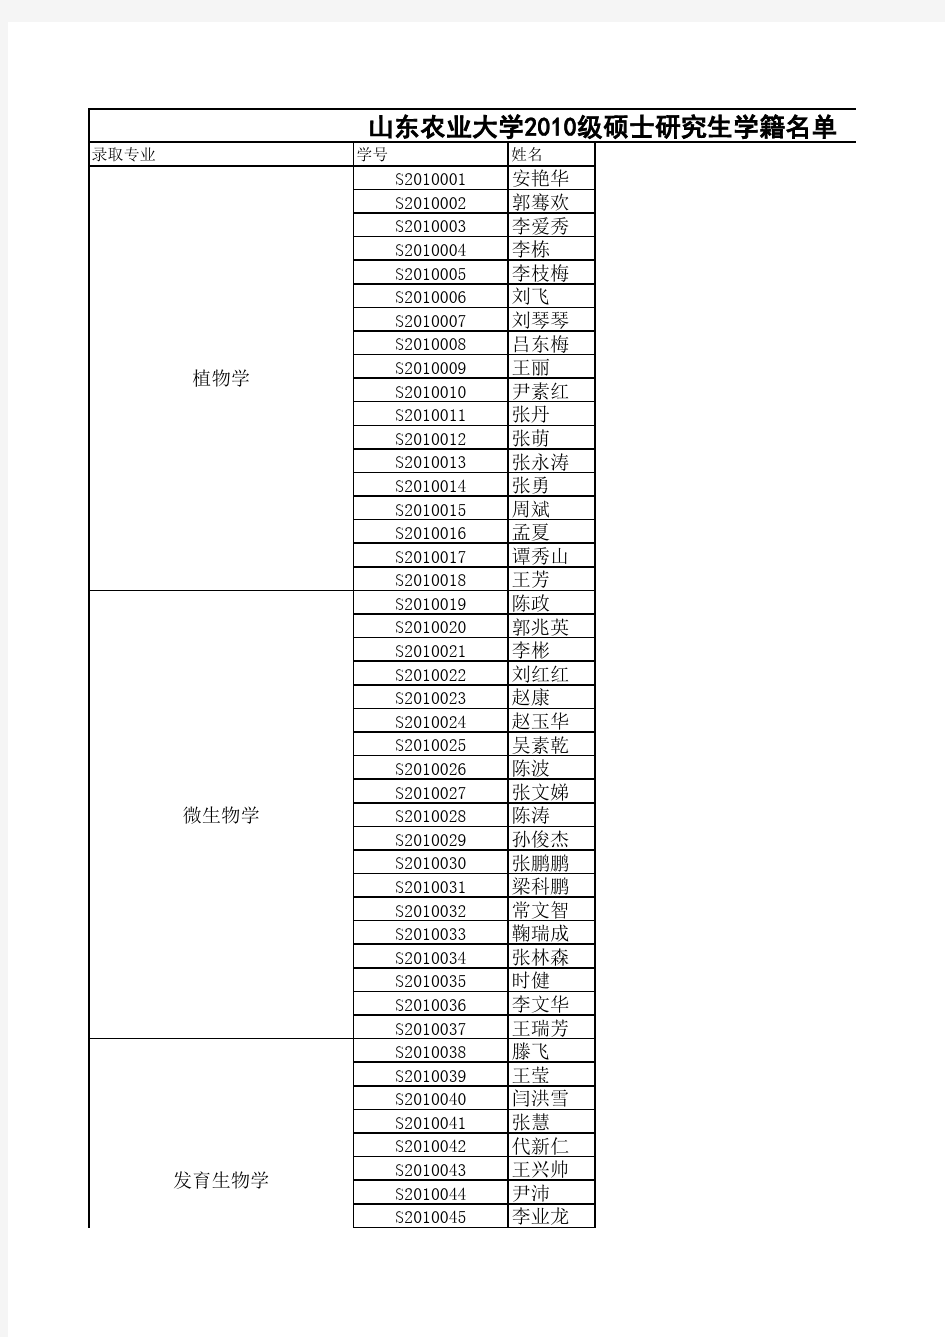 山东农业大学2010级研究生学籍名单